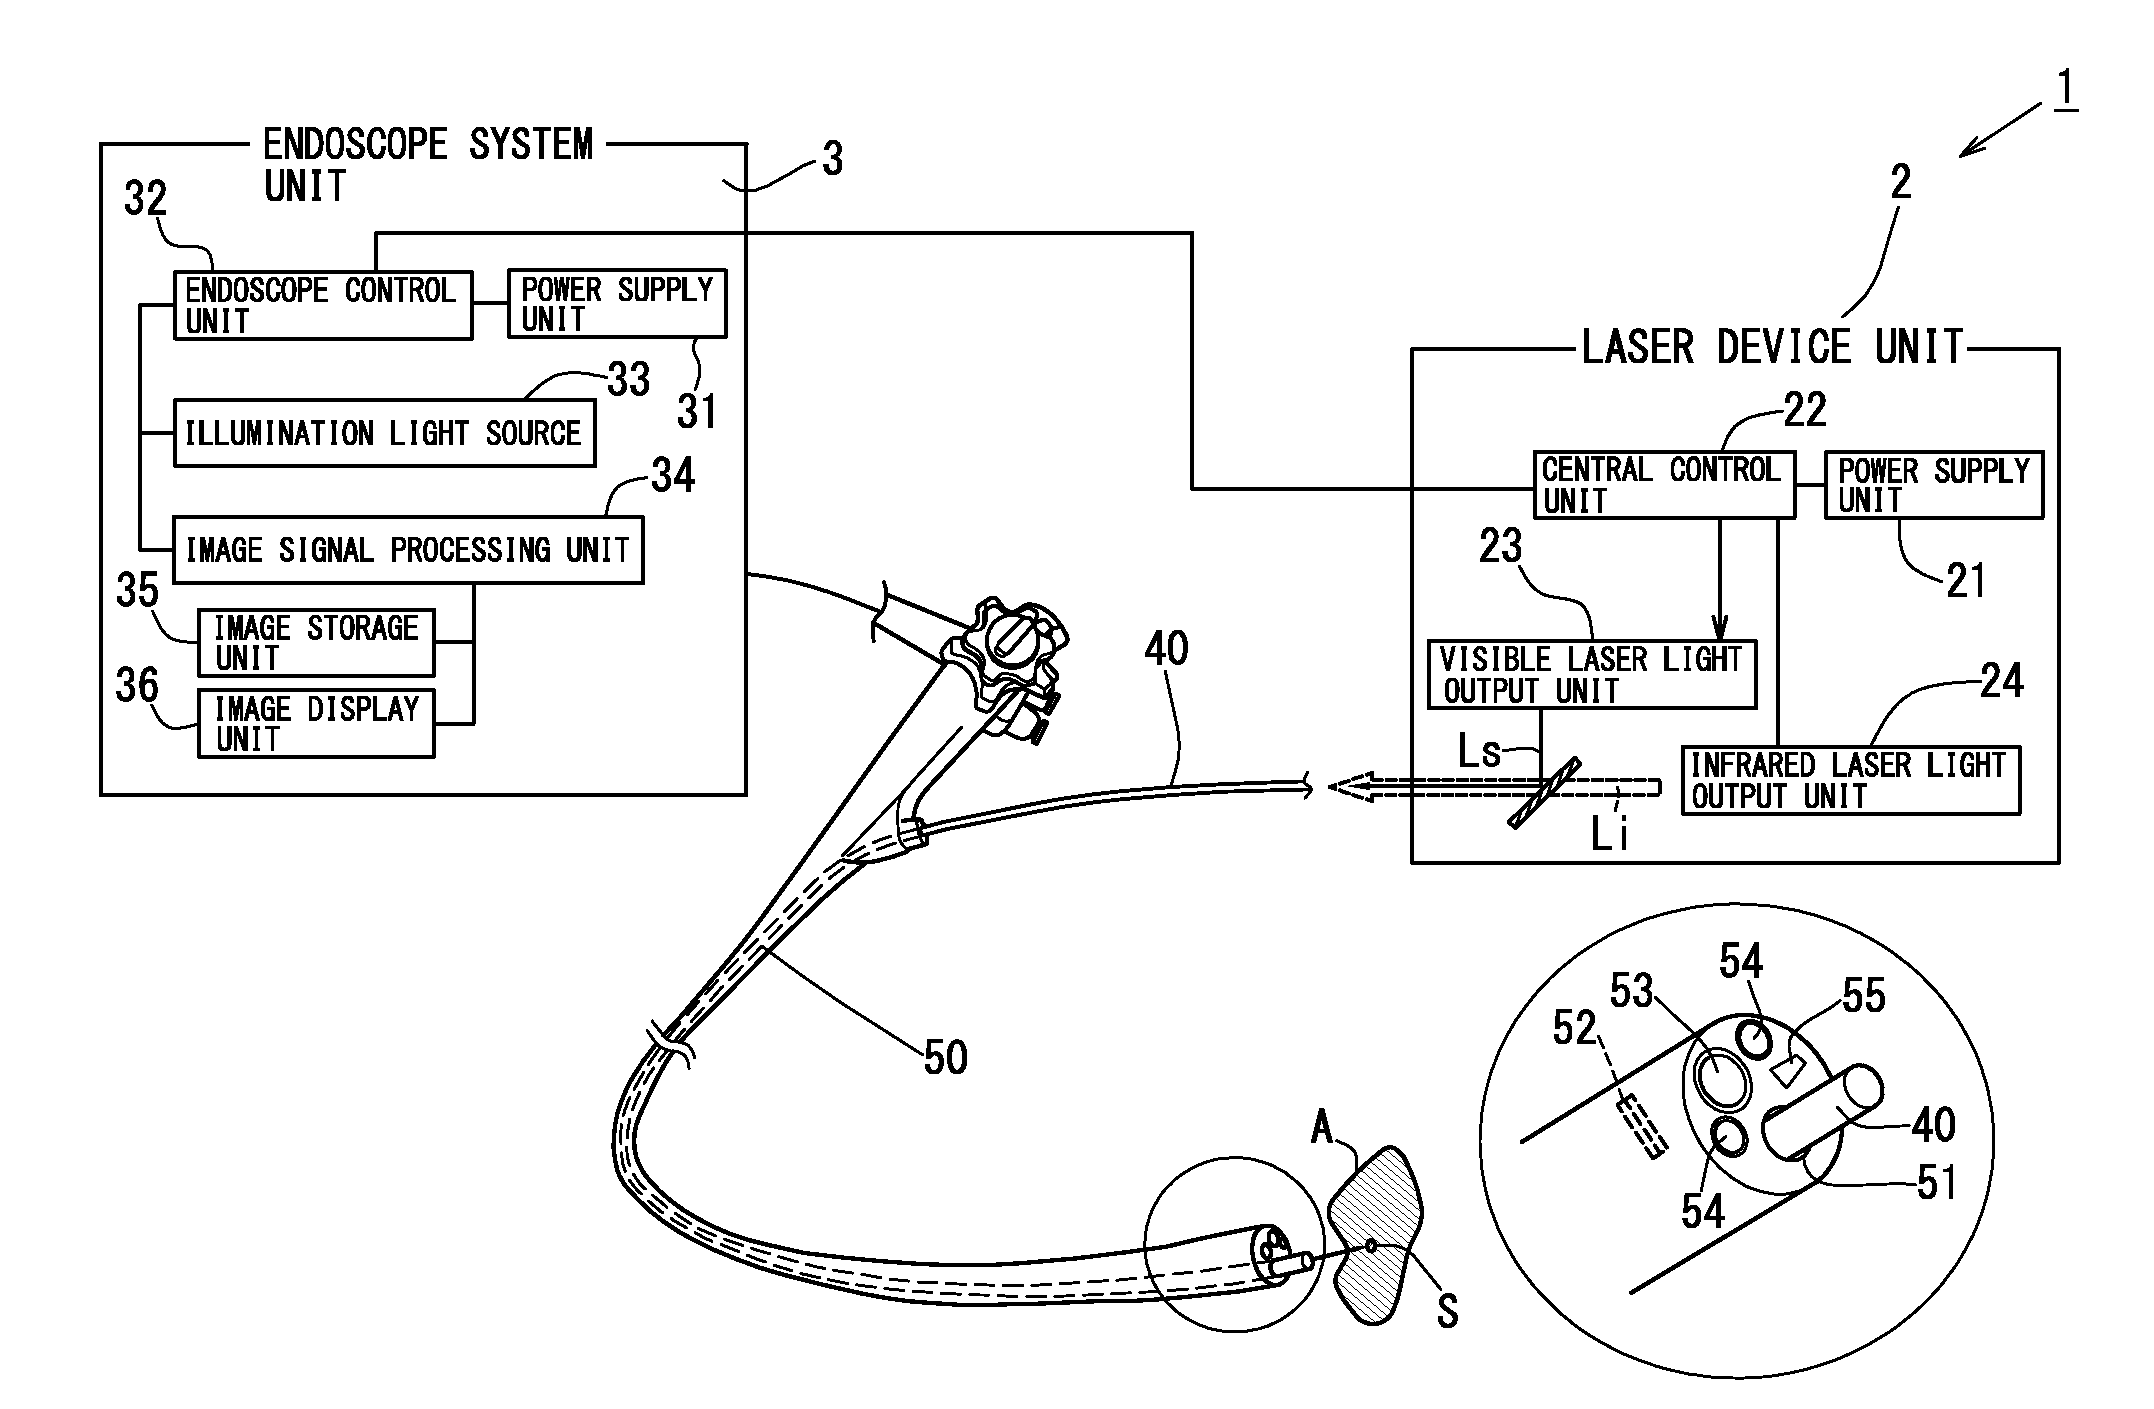 Laser waveguide device and laser waveguide system